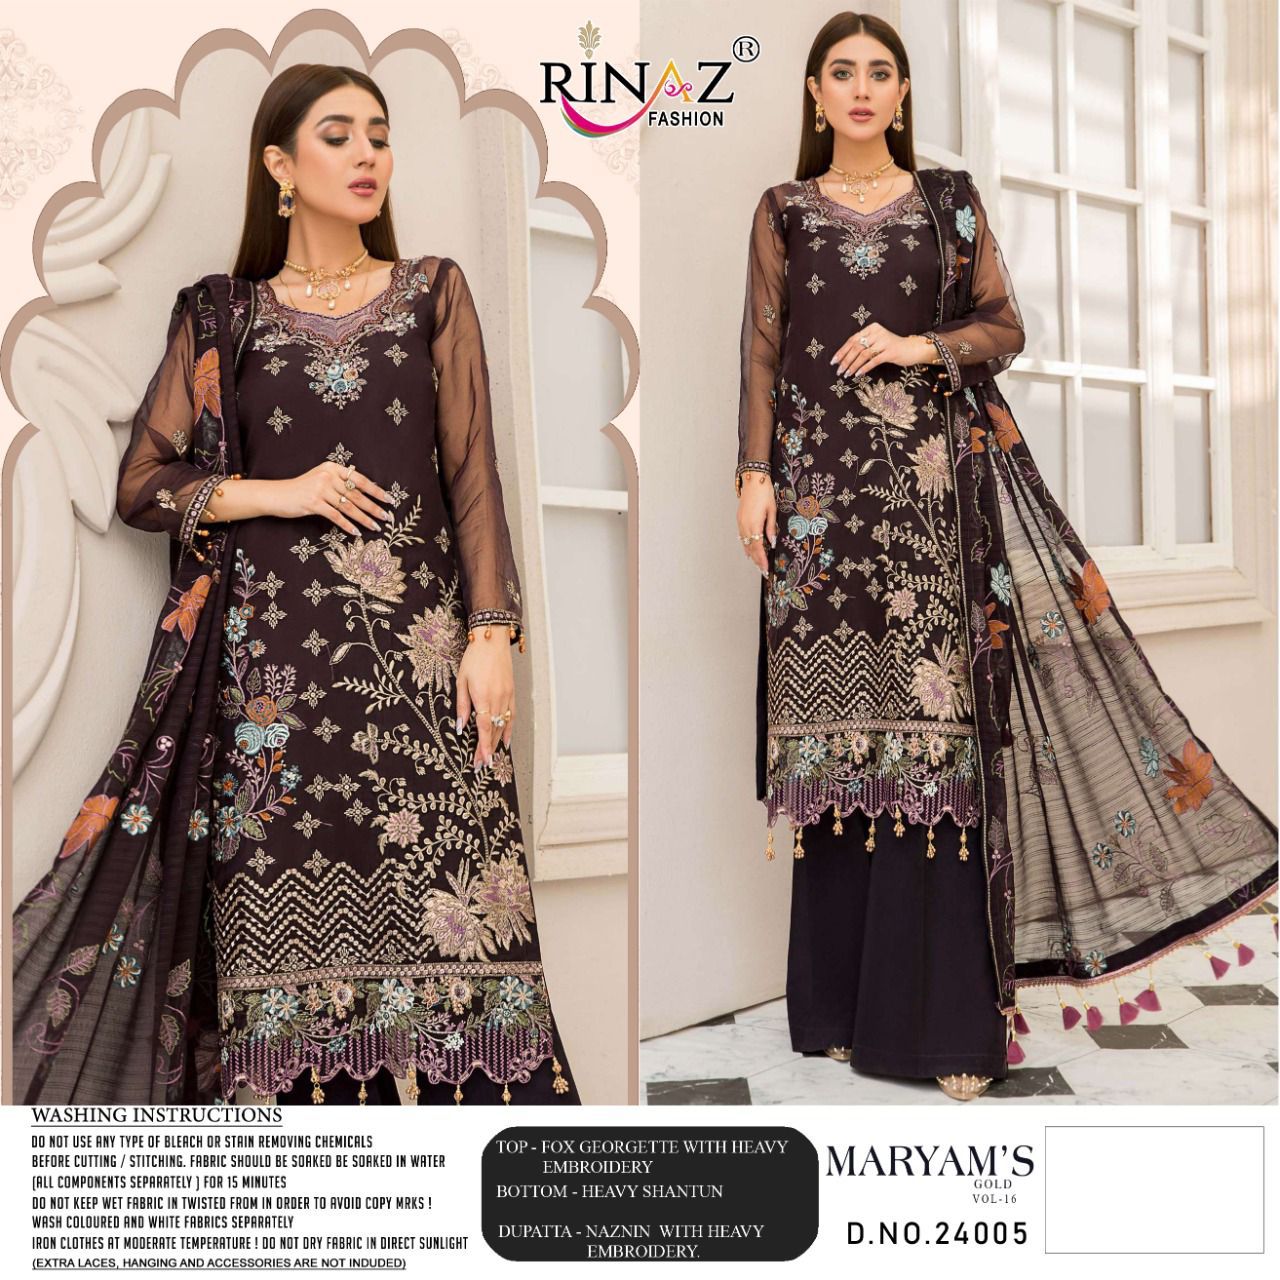 Rinaz Fashion Maryam's Gold 24005